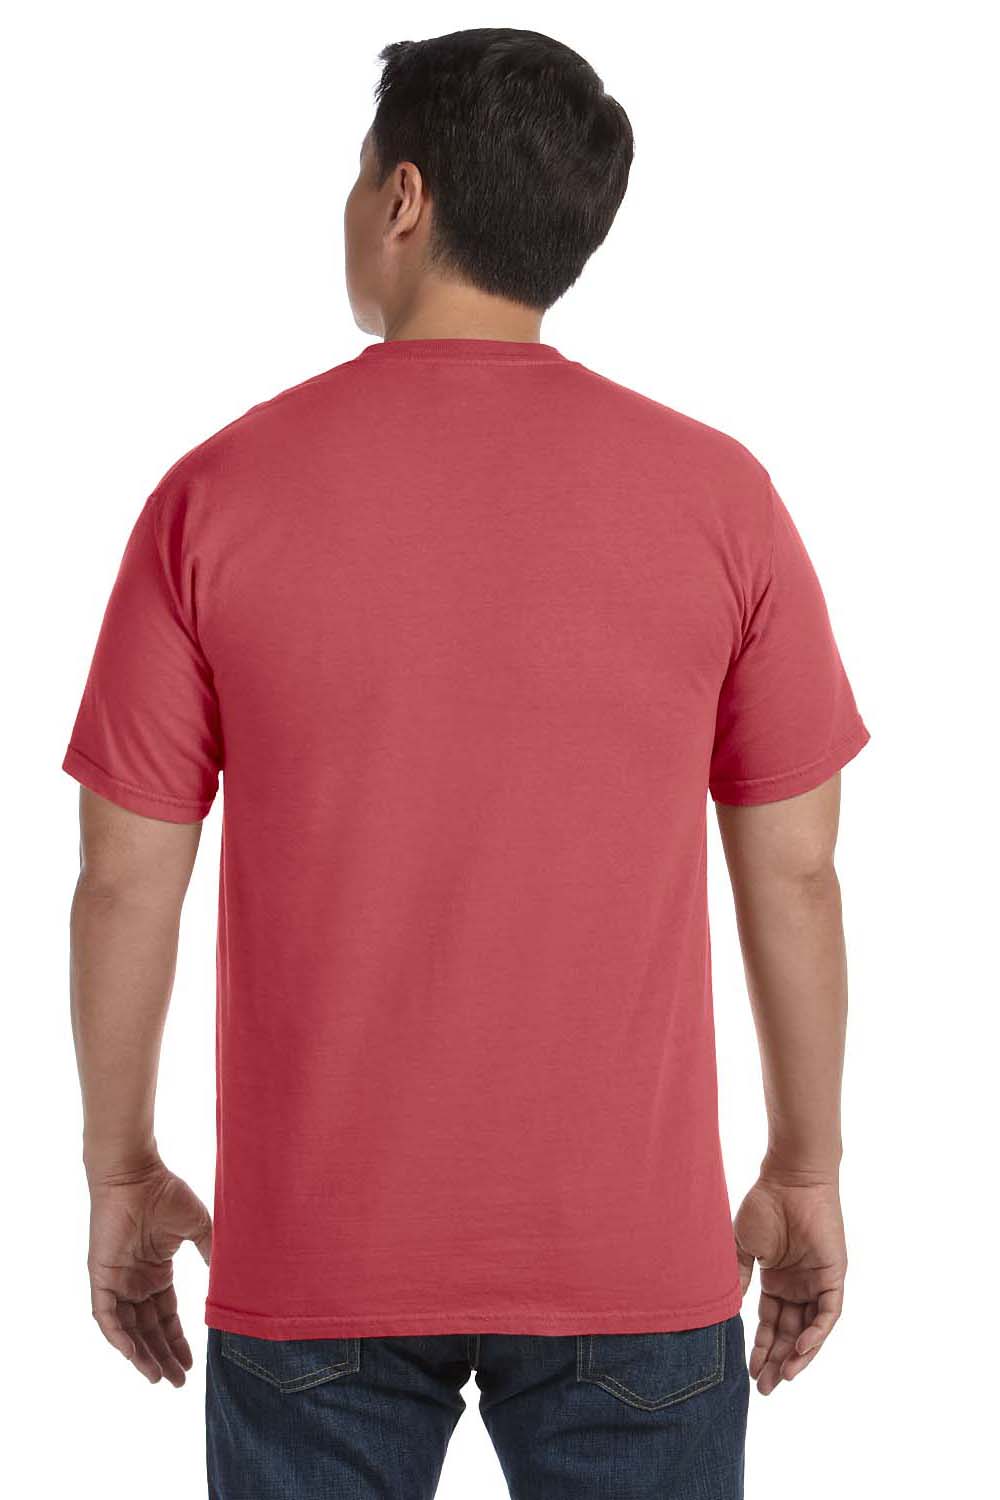 Comfort Colors C1717 Mens Short Sleeve Crewneck T-Shirt Cumin Red Back